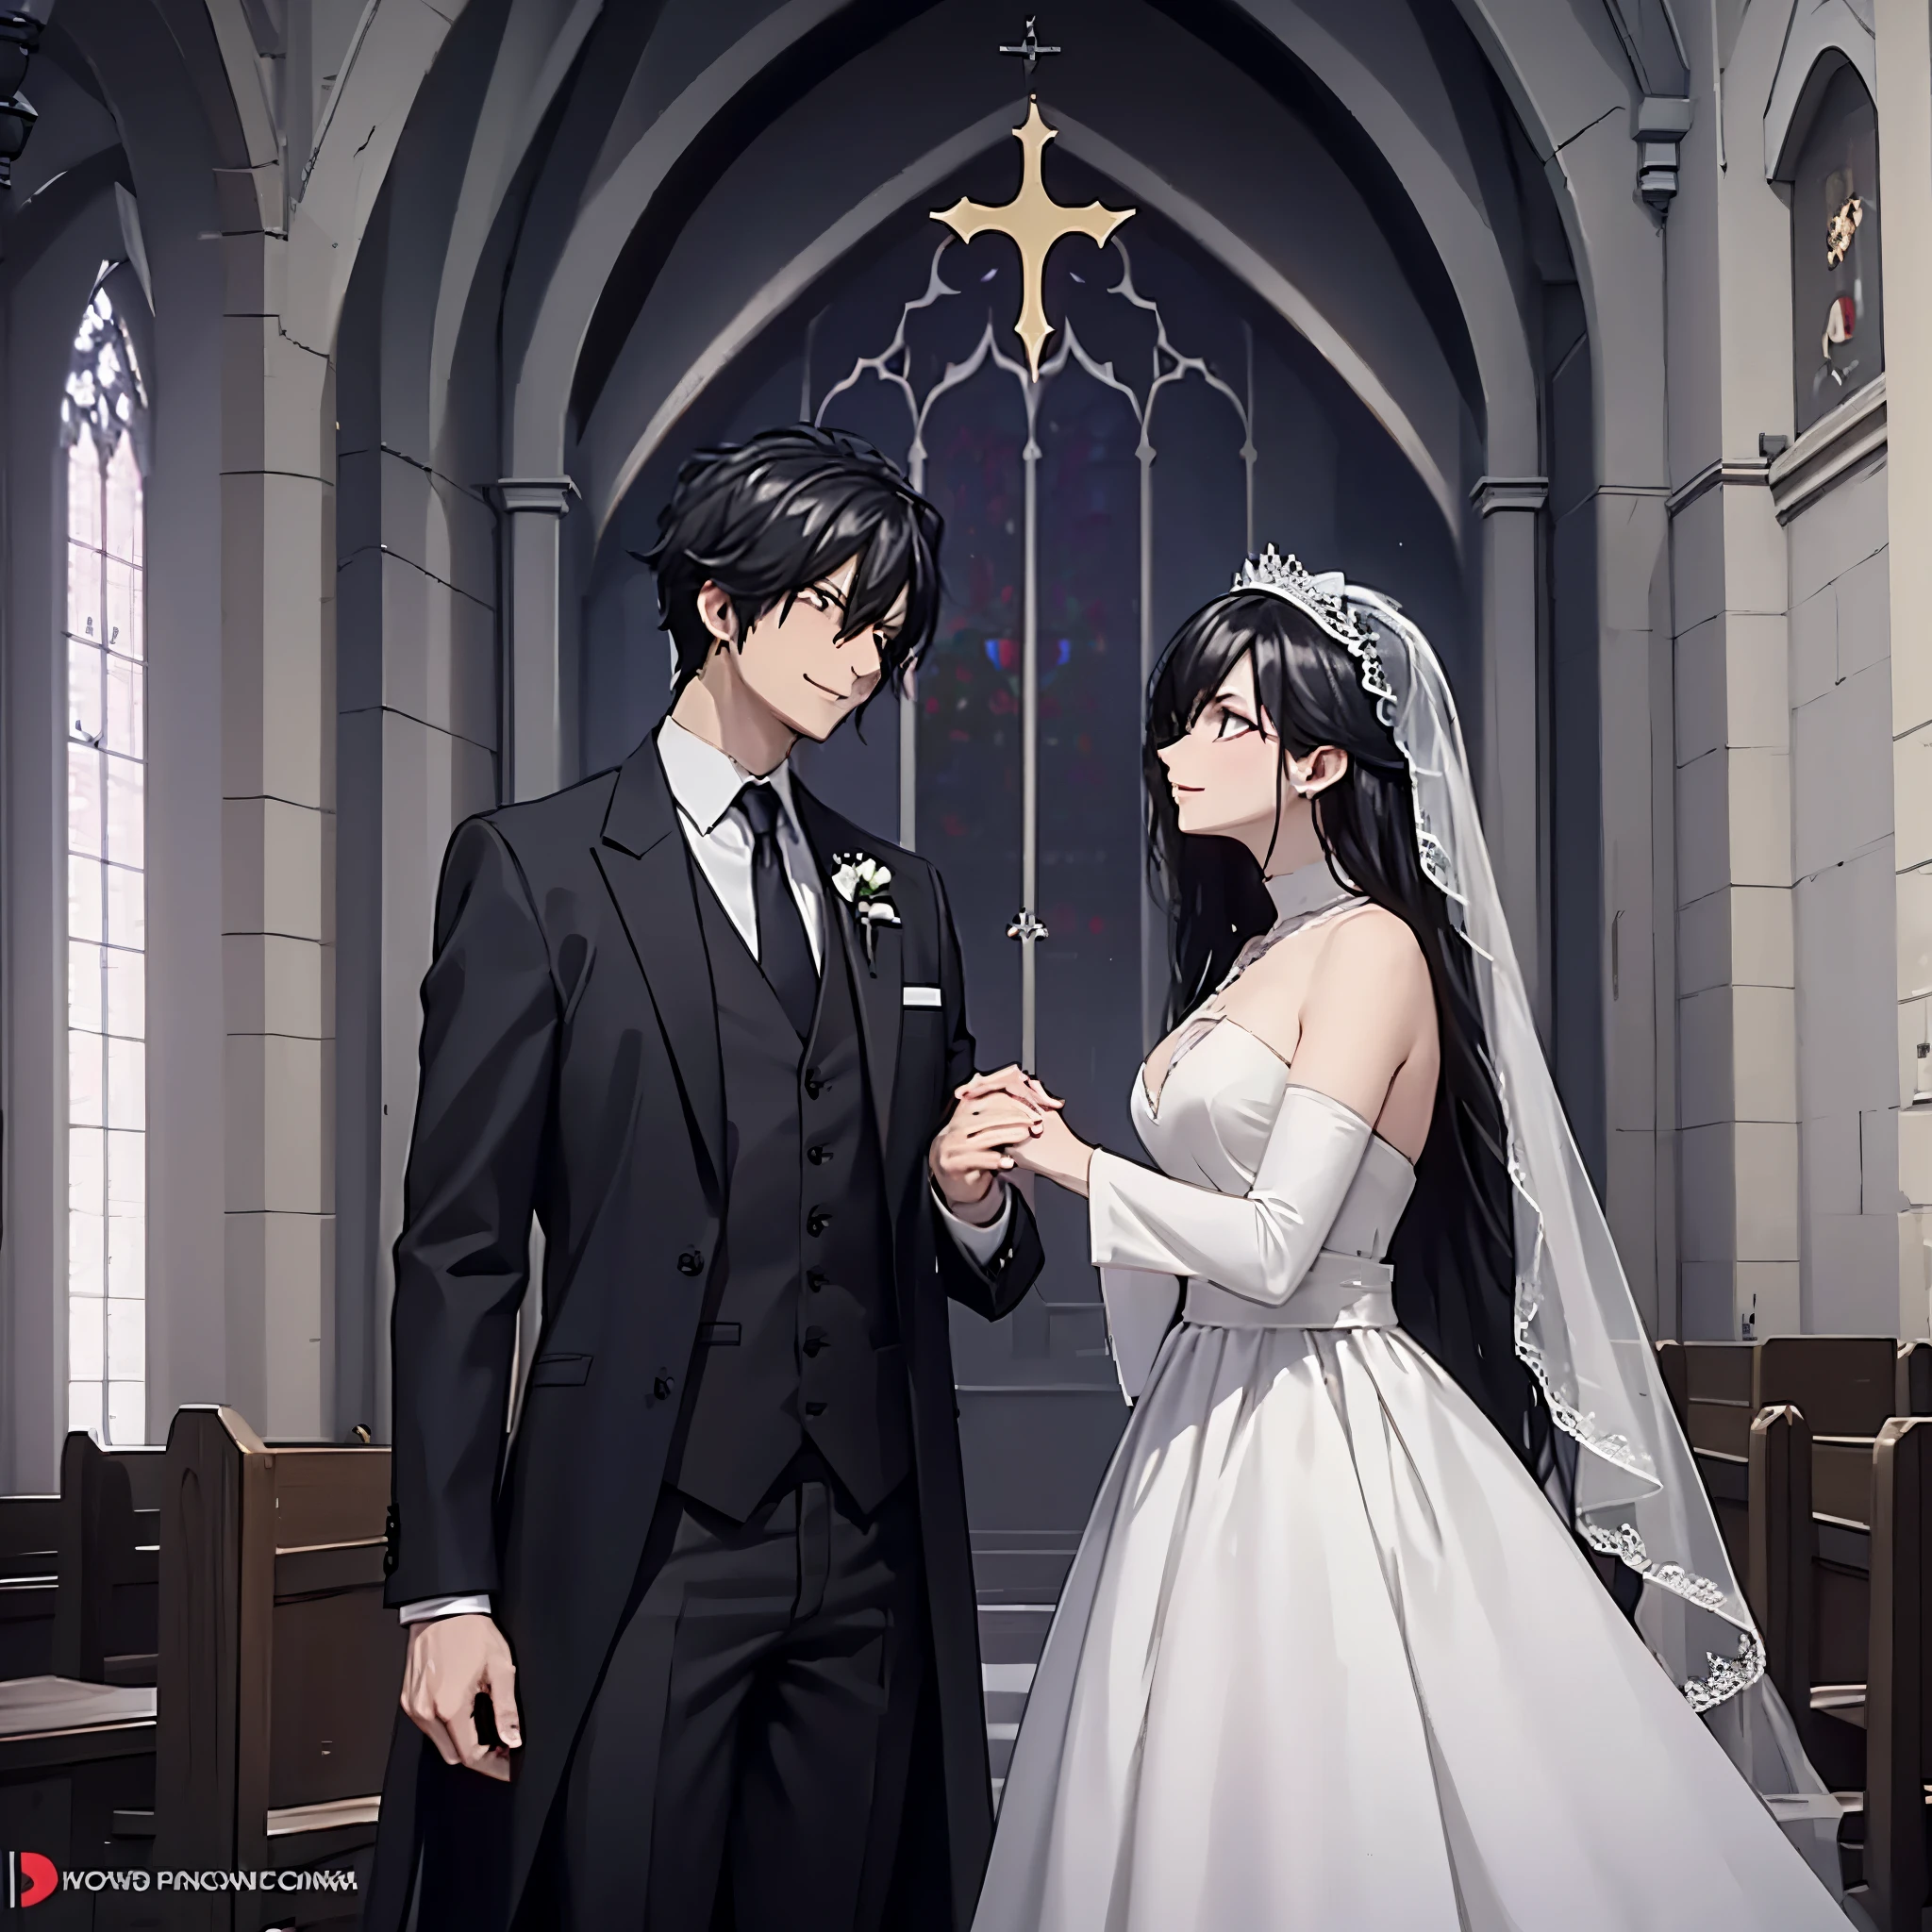 رجل يرتدي بدلة سوداء يمسك بيد امرأة (العين الحمراء), في ثوب الزفاف الأبيض في الكنيسة, يبتسم, ملامح مثالية وجه مثالي
